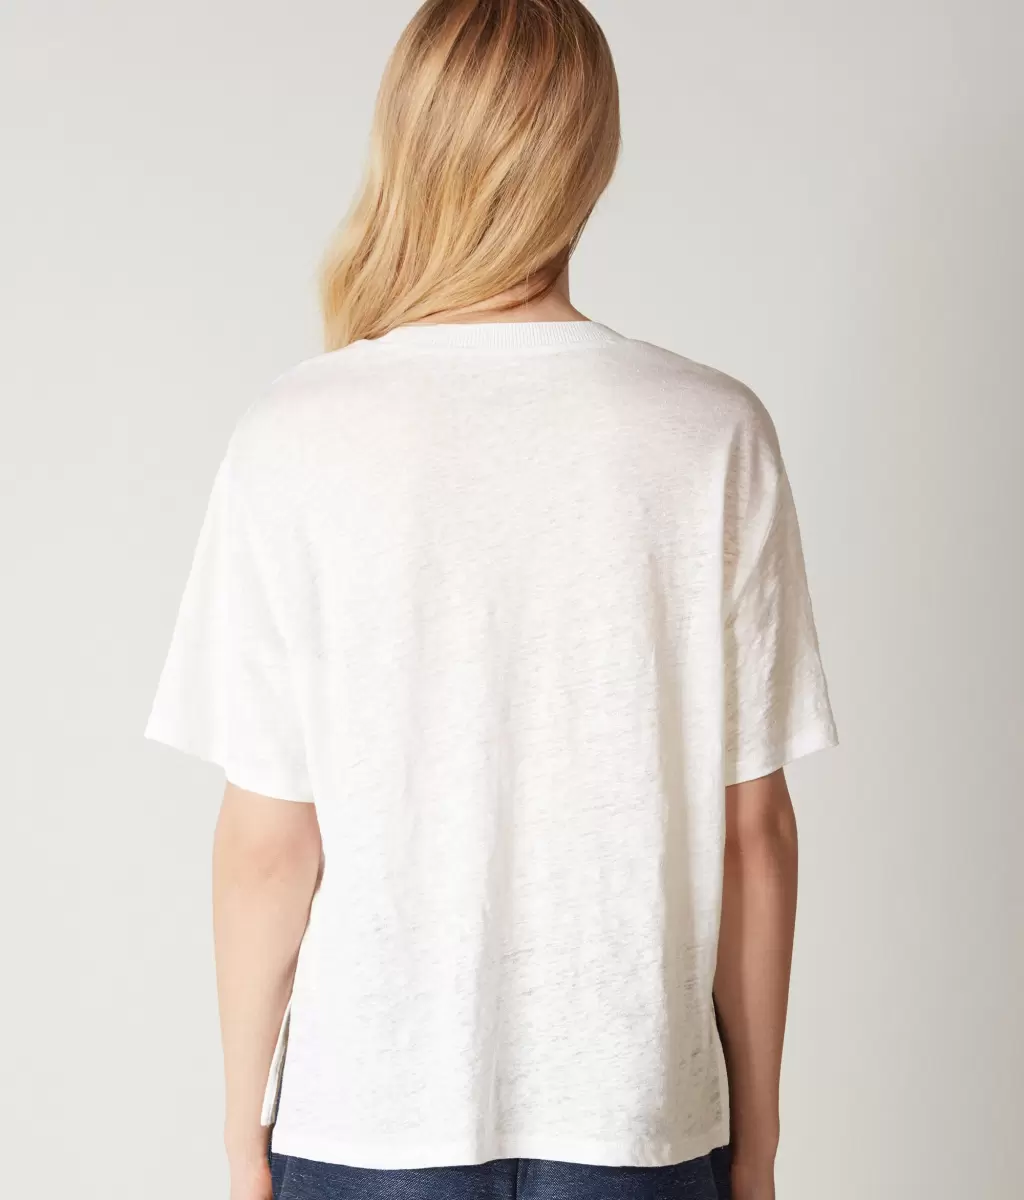 Falconeri Kobieta Topy I T-Shirty Lniany T-Shirt Z Okrągłym Dekoltem I Dzianinowym Obszyciem White - 2